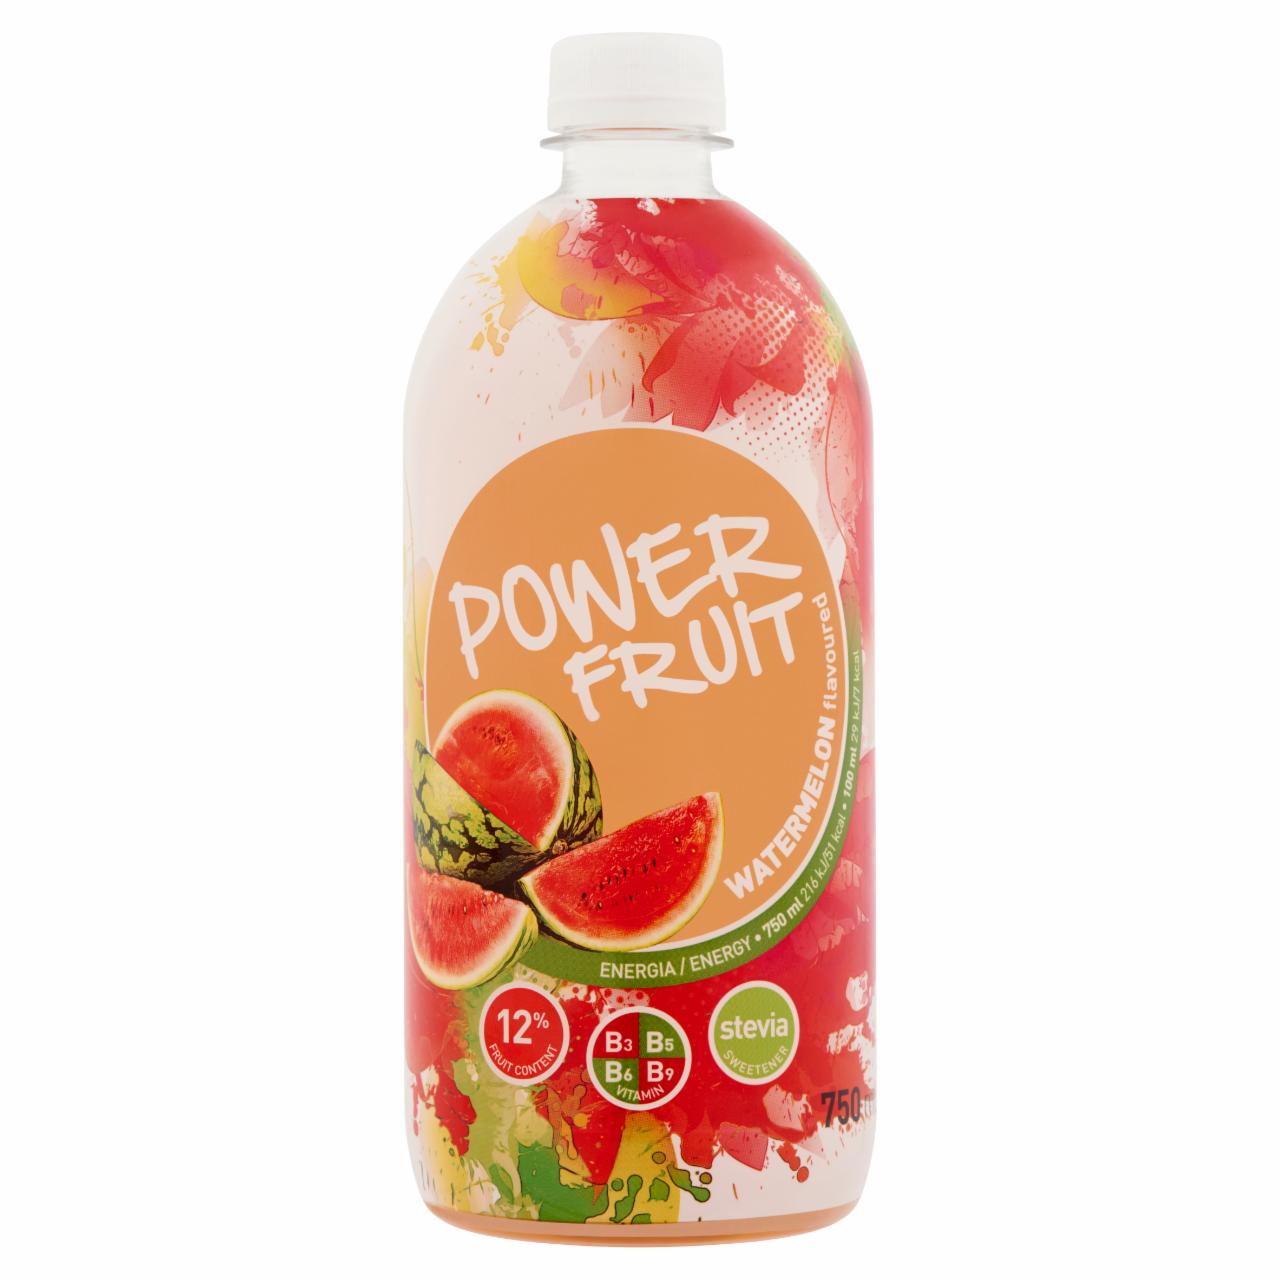 Képek - Power Fruit energiaszegény görögdinnye-alma ital